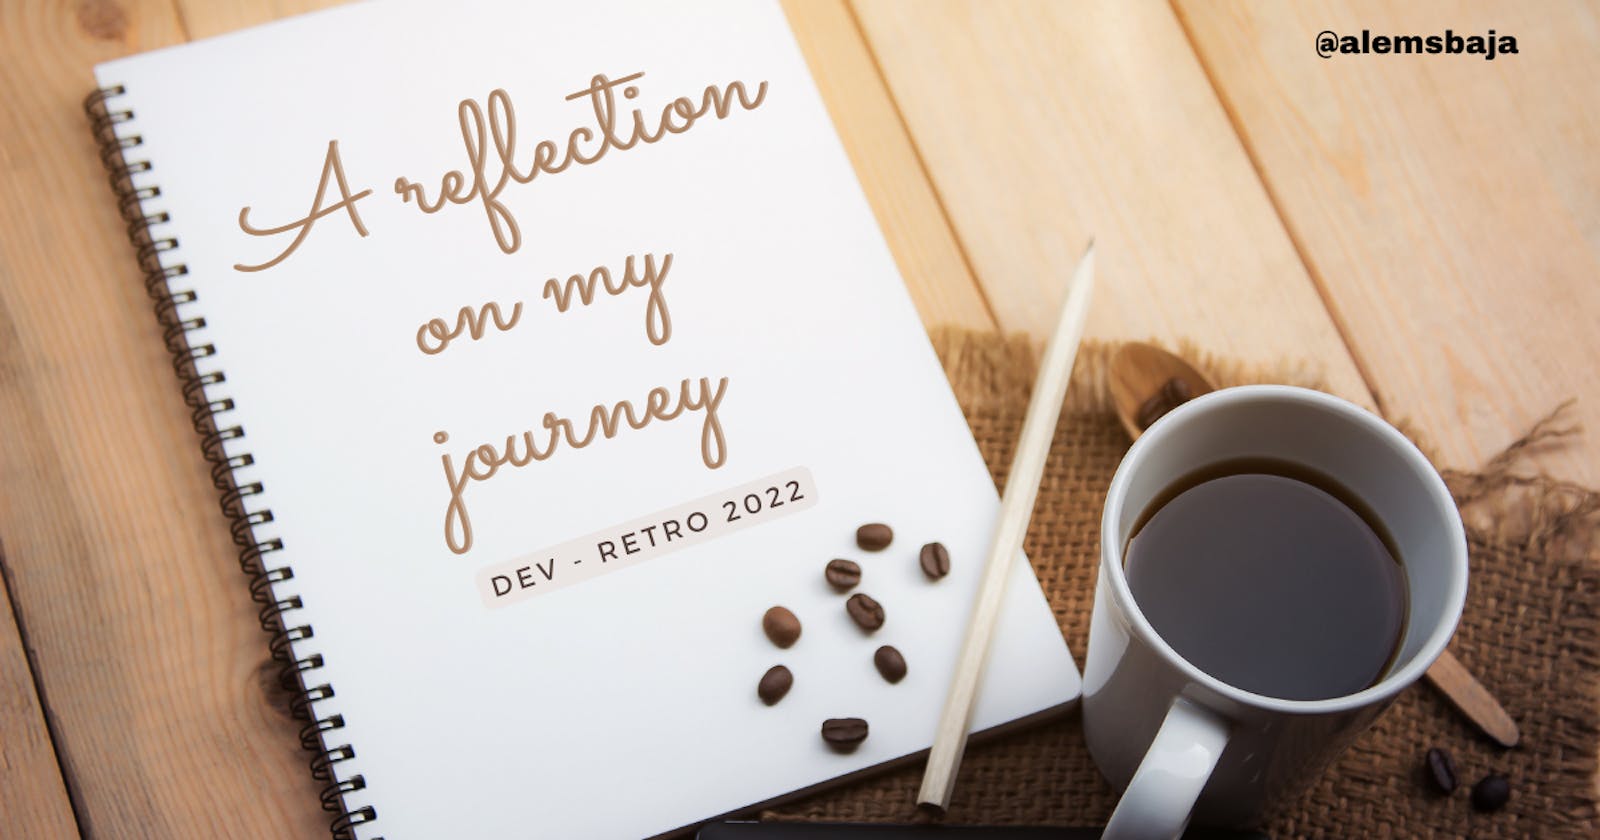 A reflection on my journey | Dev - Retro 2022